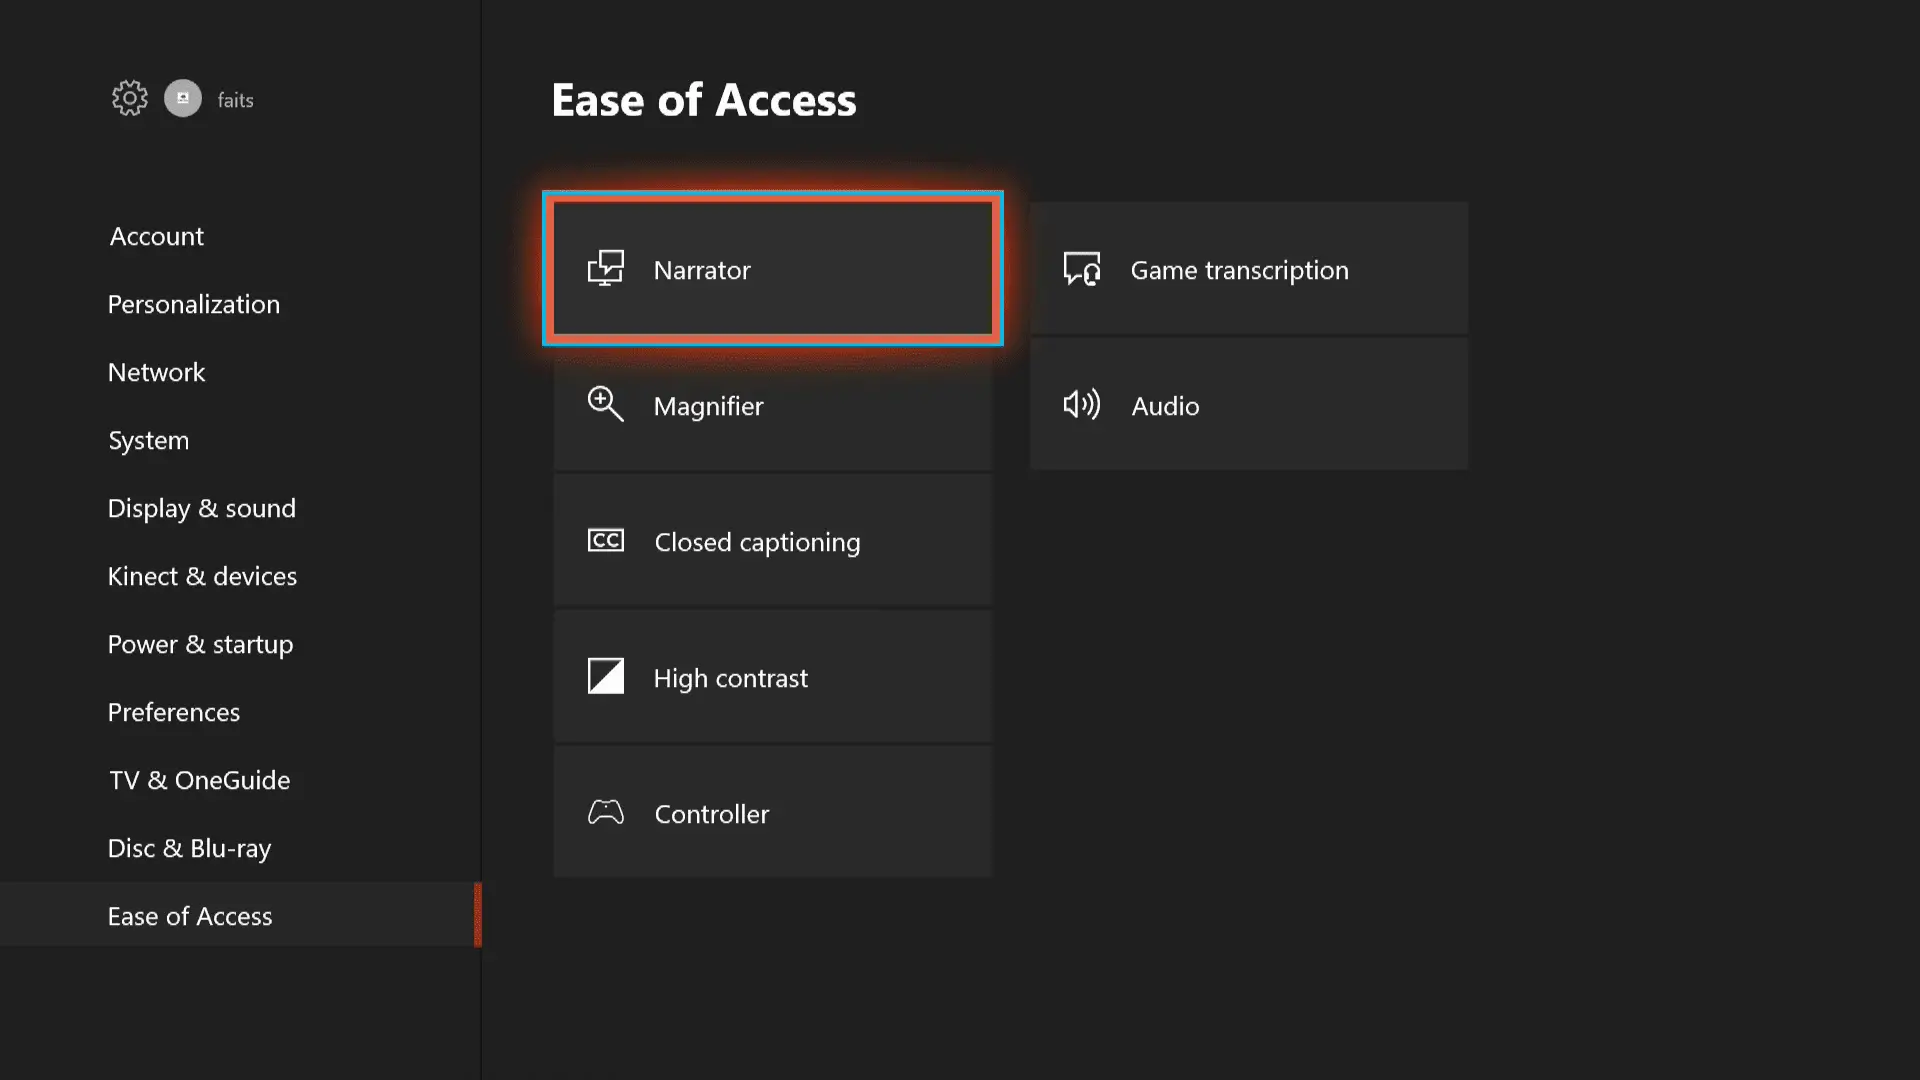 As configurações do sistema de facilidade de acesso do Xbox One.